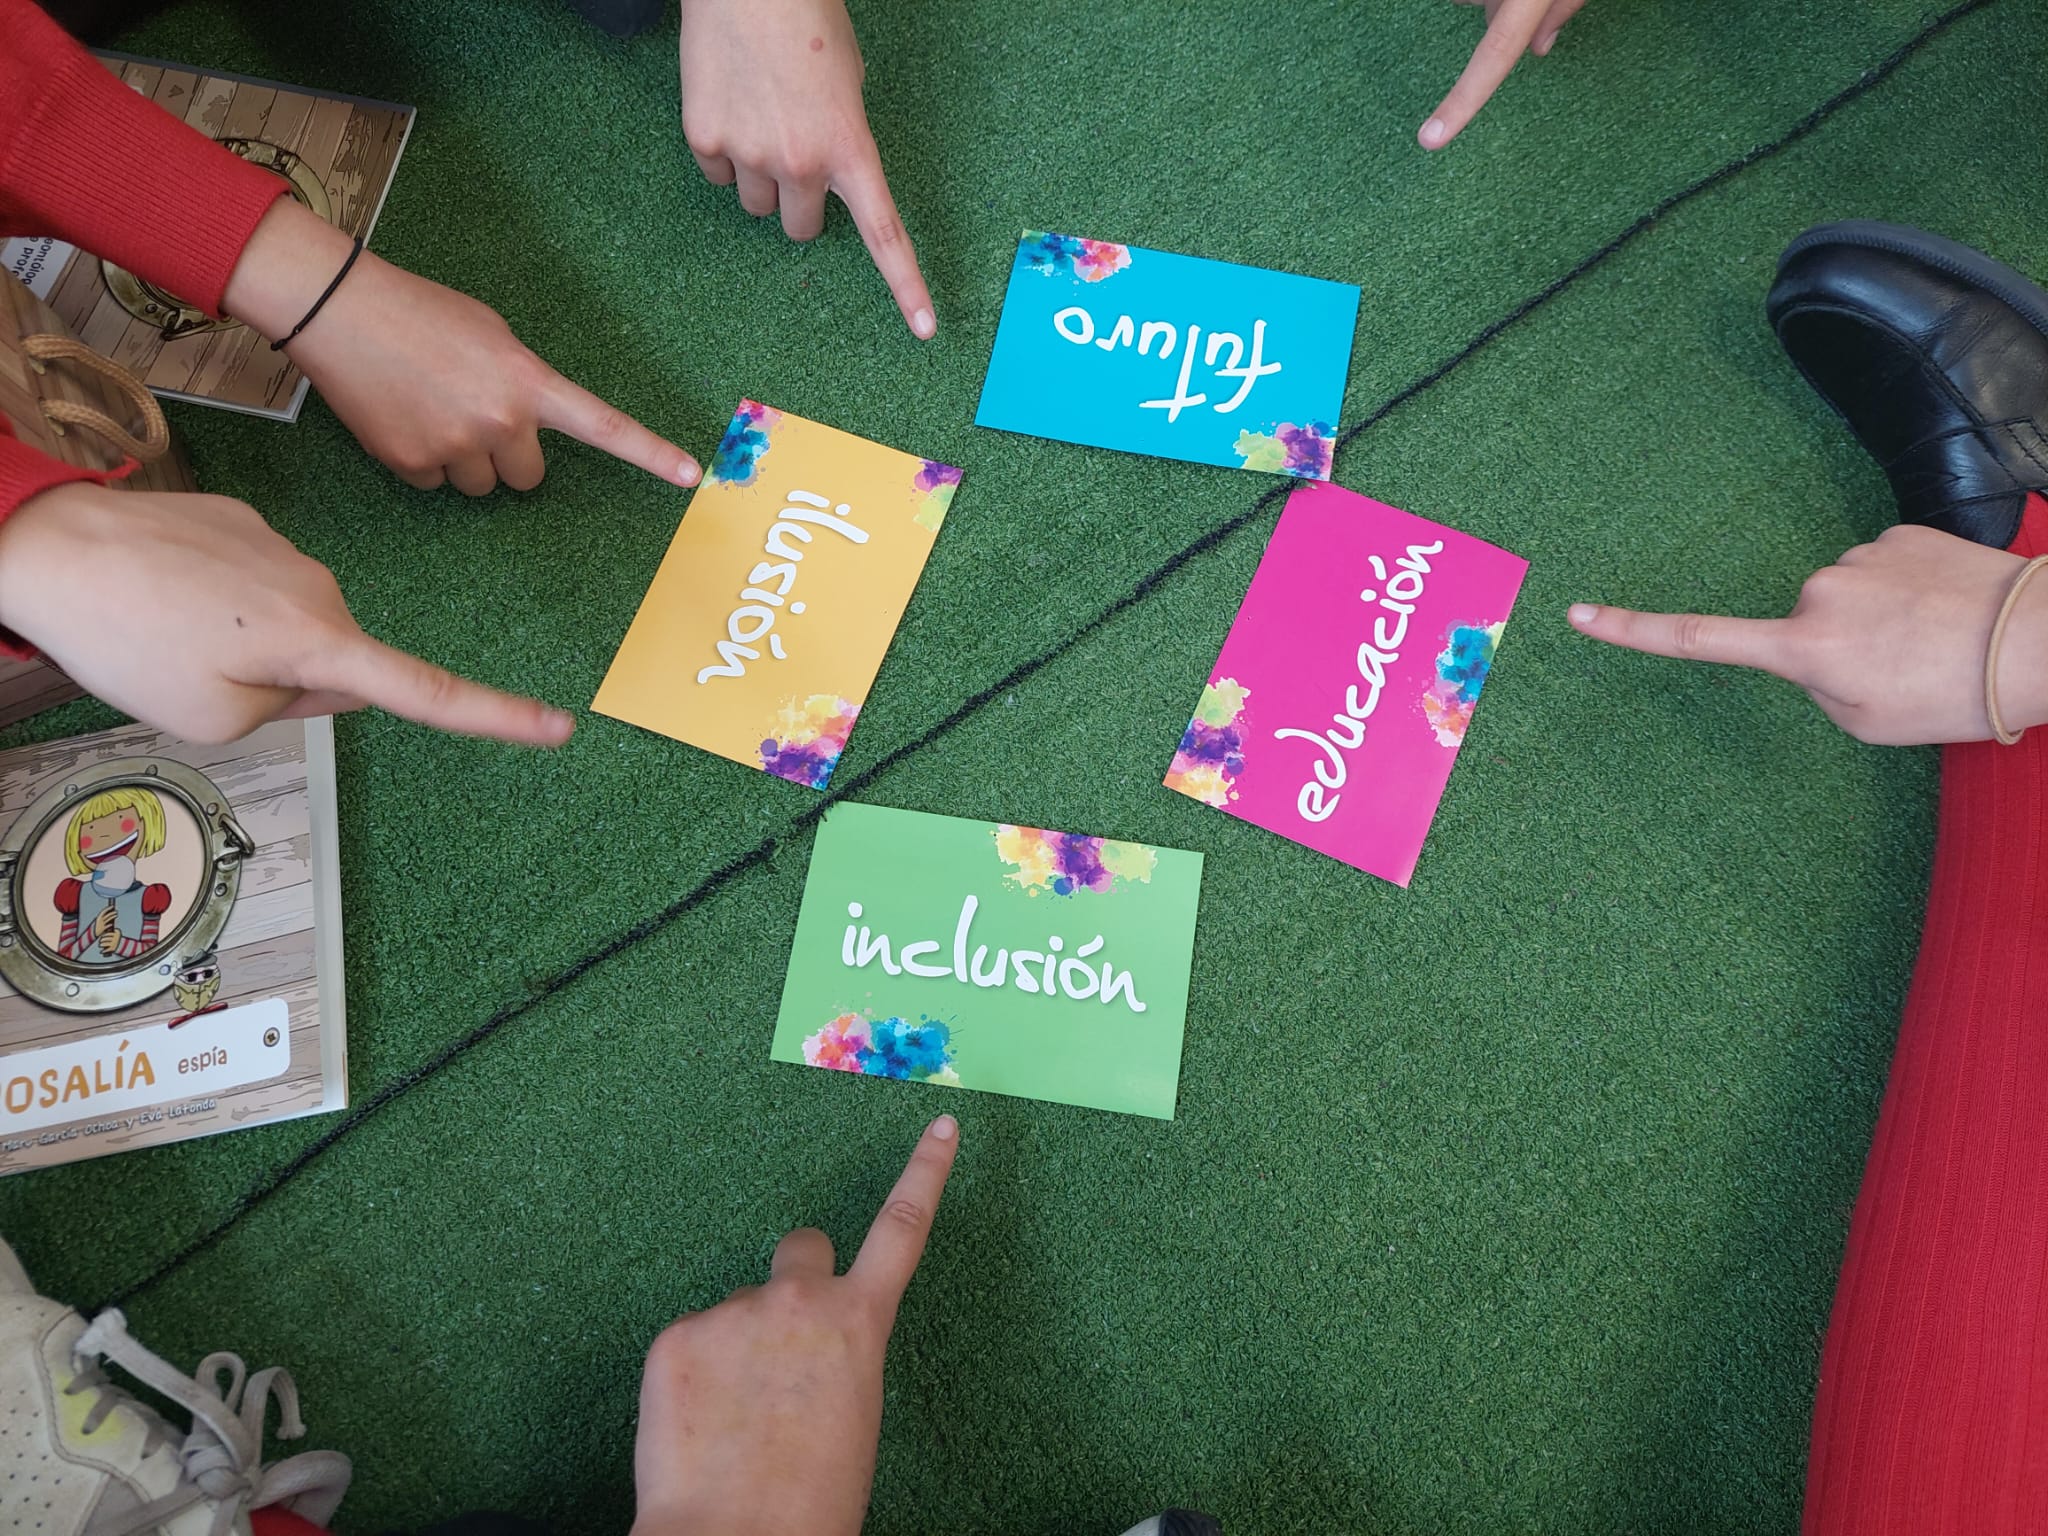 Estudiantes señalando unas tarjetas con las palabras inclusión, ilusión, futuro y educación